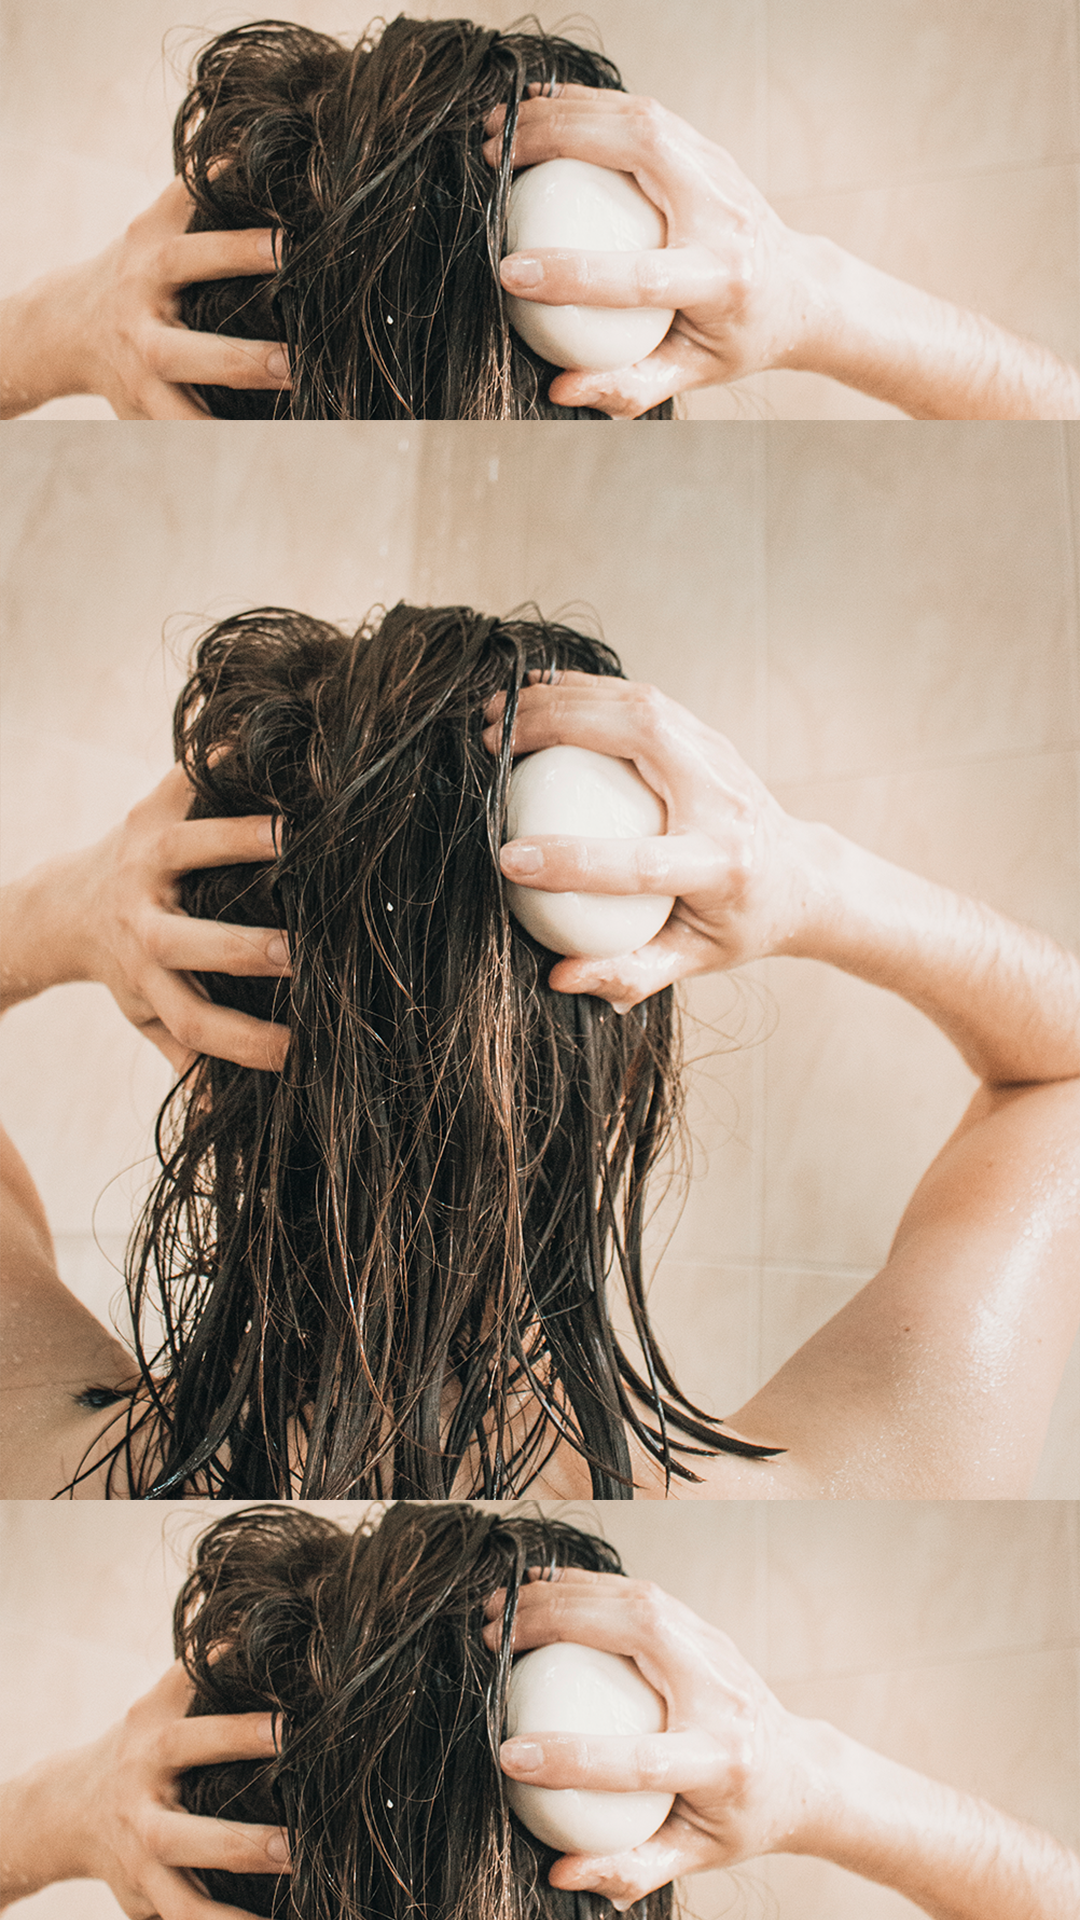 Descubre los beneficios saludables y ecológicos del shampoo y acondicionador sólido